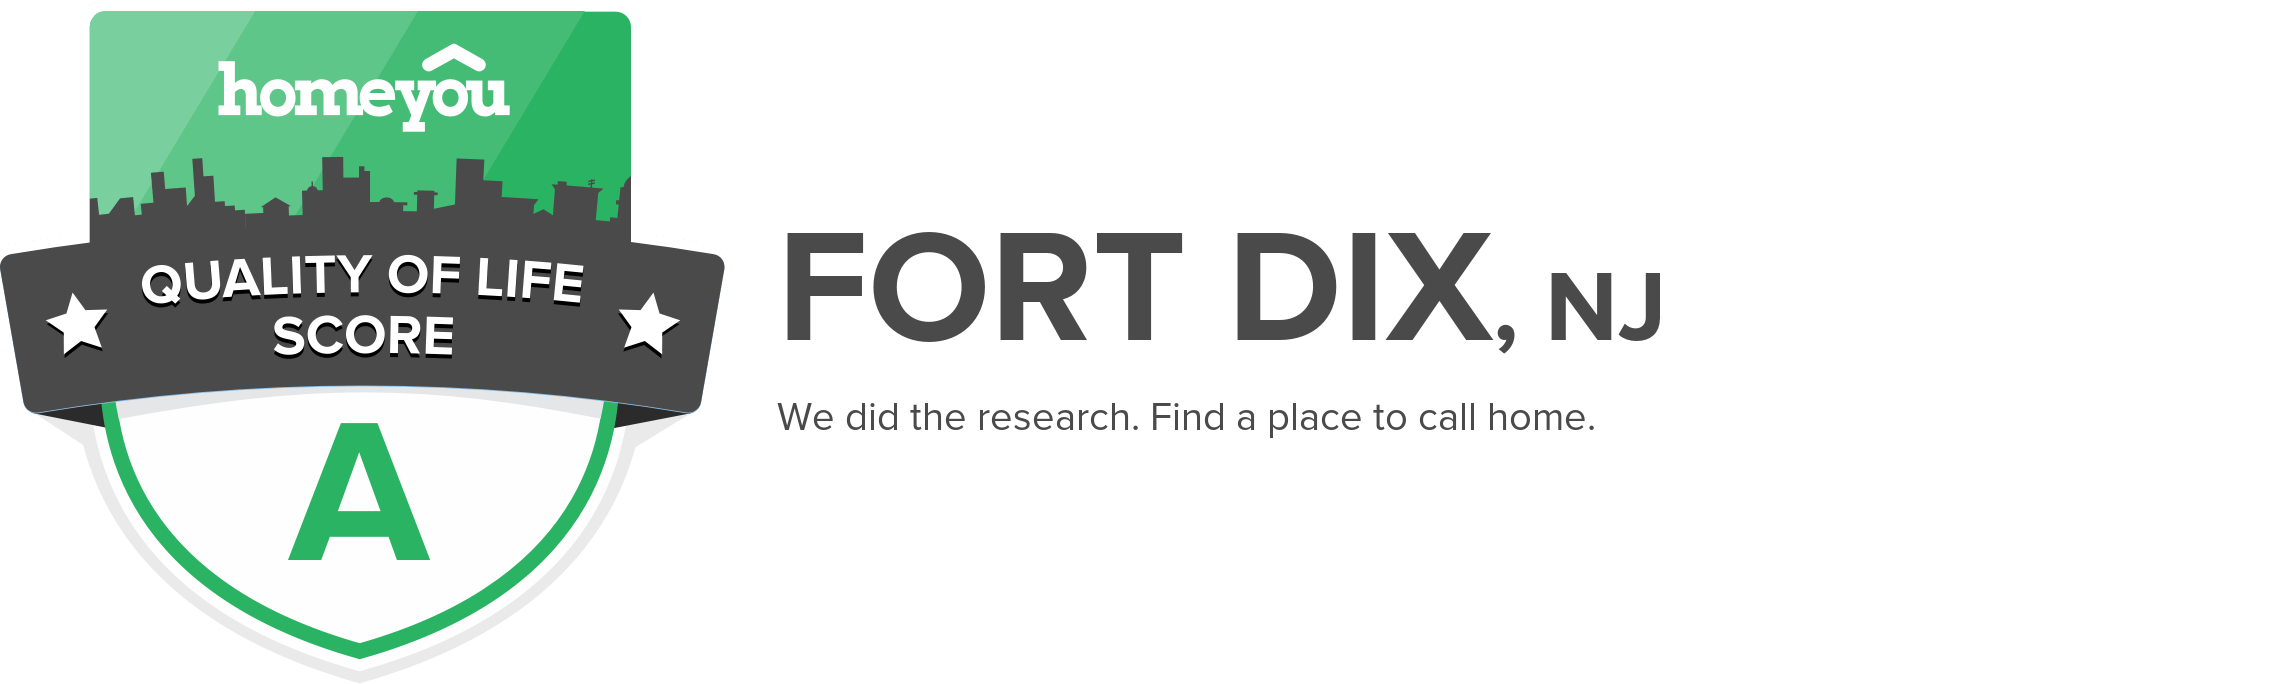 Fort Dix, NJ